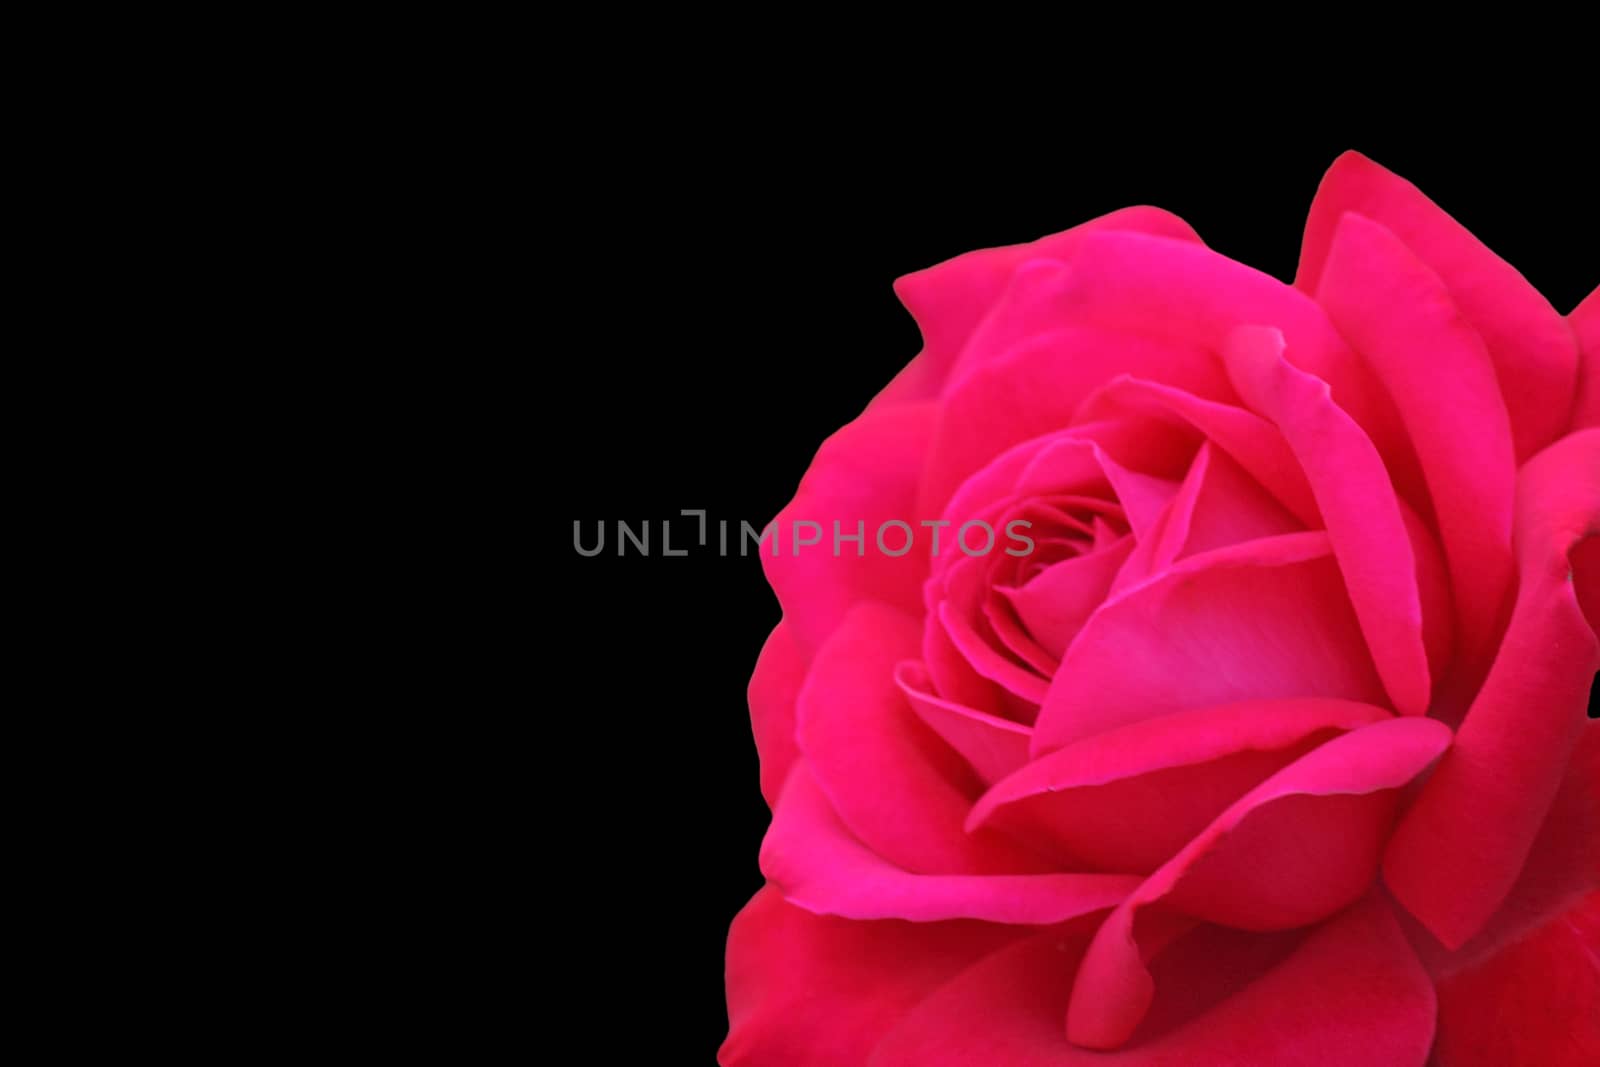 red rose over black background